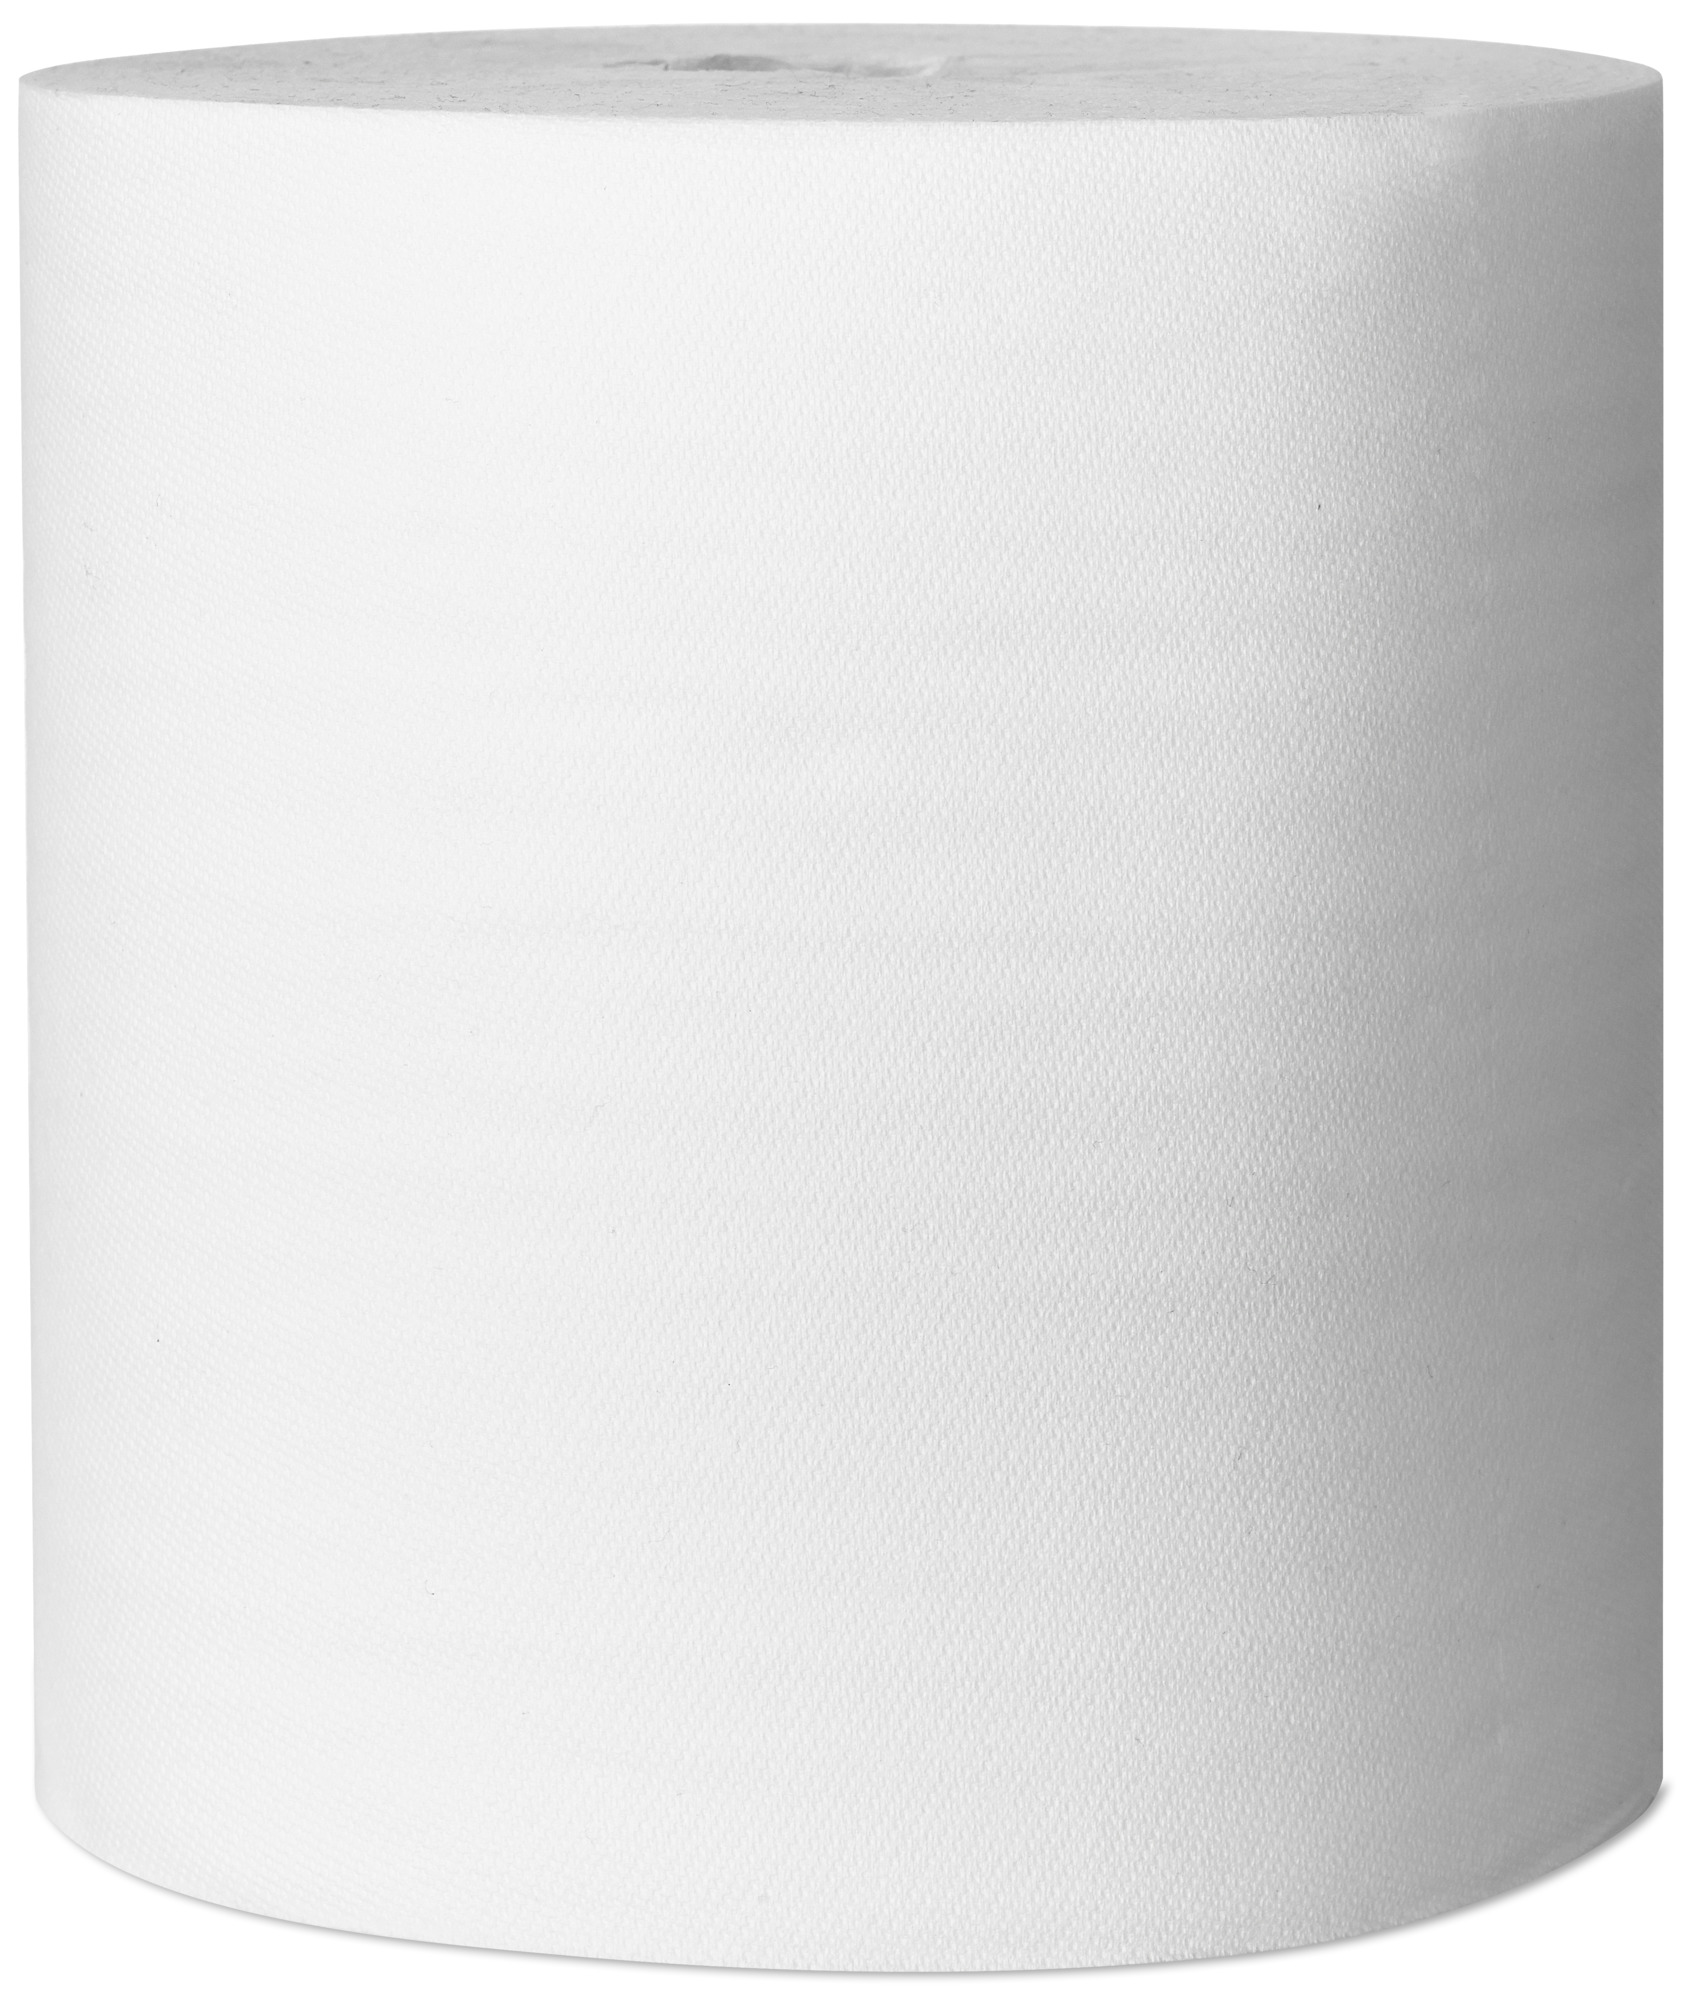 Tork (M4) Reflex™ Mehrzweck Papierwischtücher 1-lagig, weiß, 6 Rollen - 473412